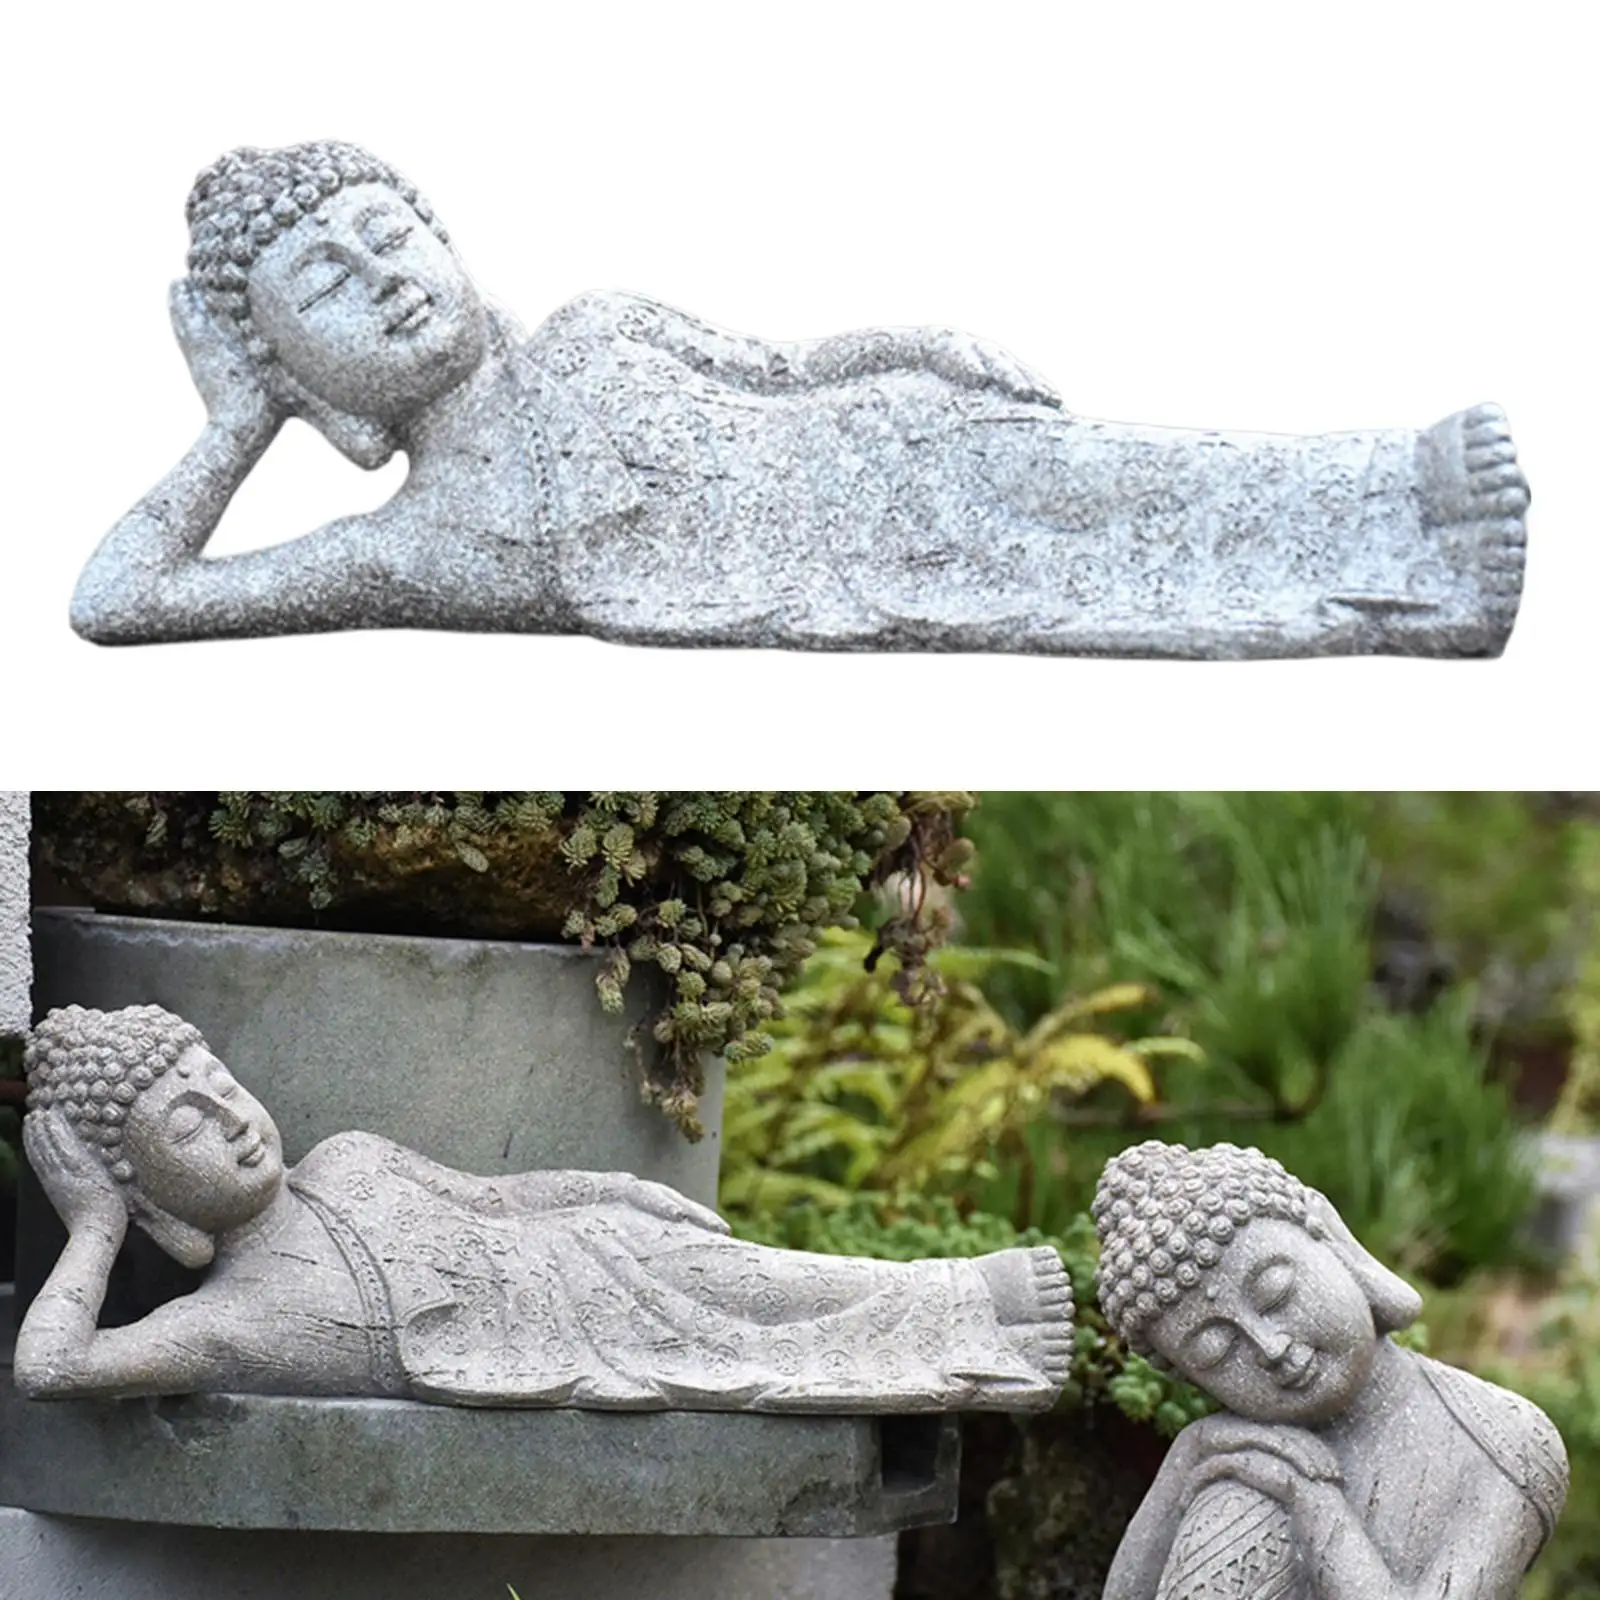 

Скульптура Будды, статуя домашний декор дзен сад наружное украшение камни для медитации статуэтки Будды украшения